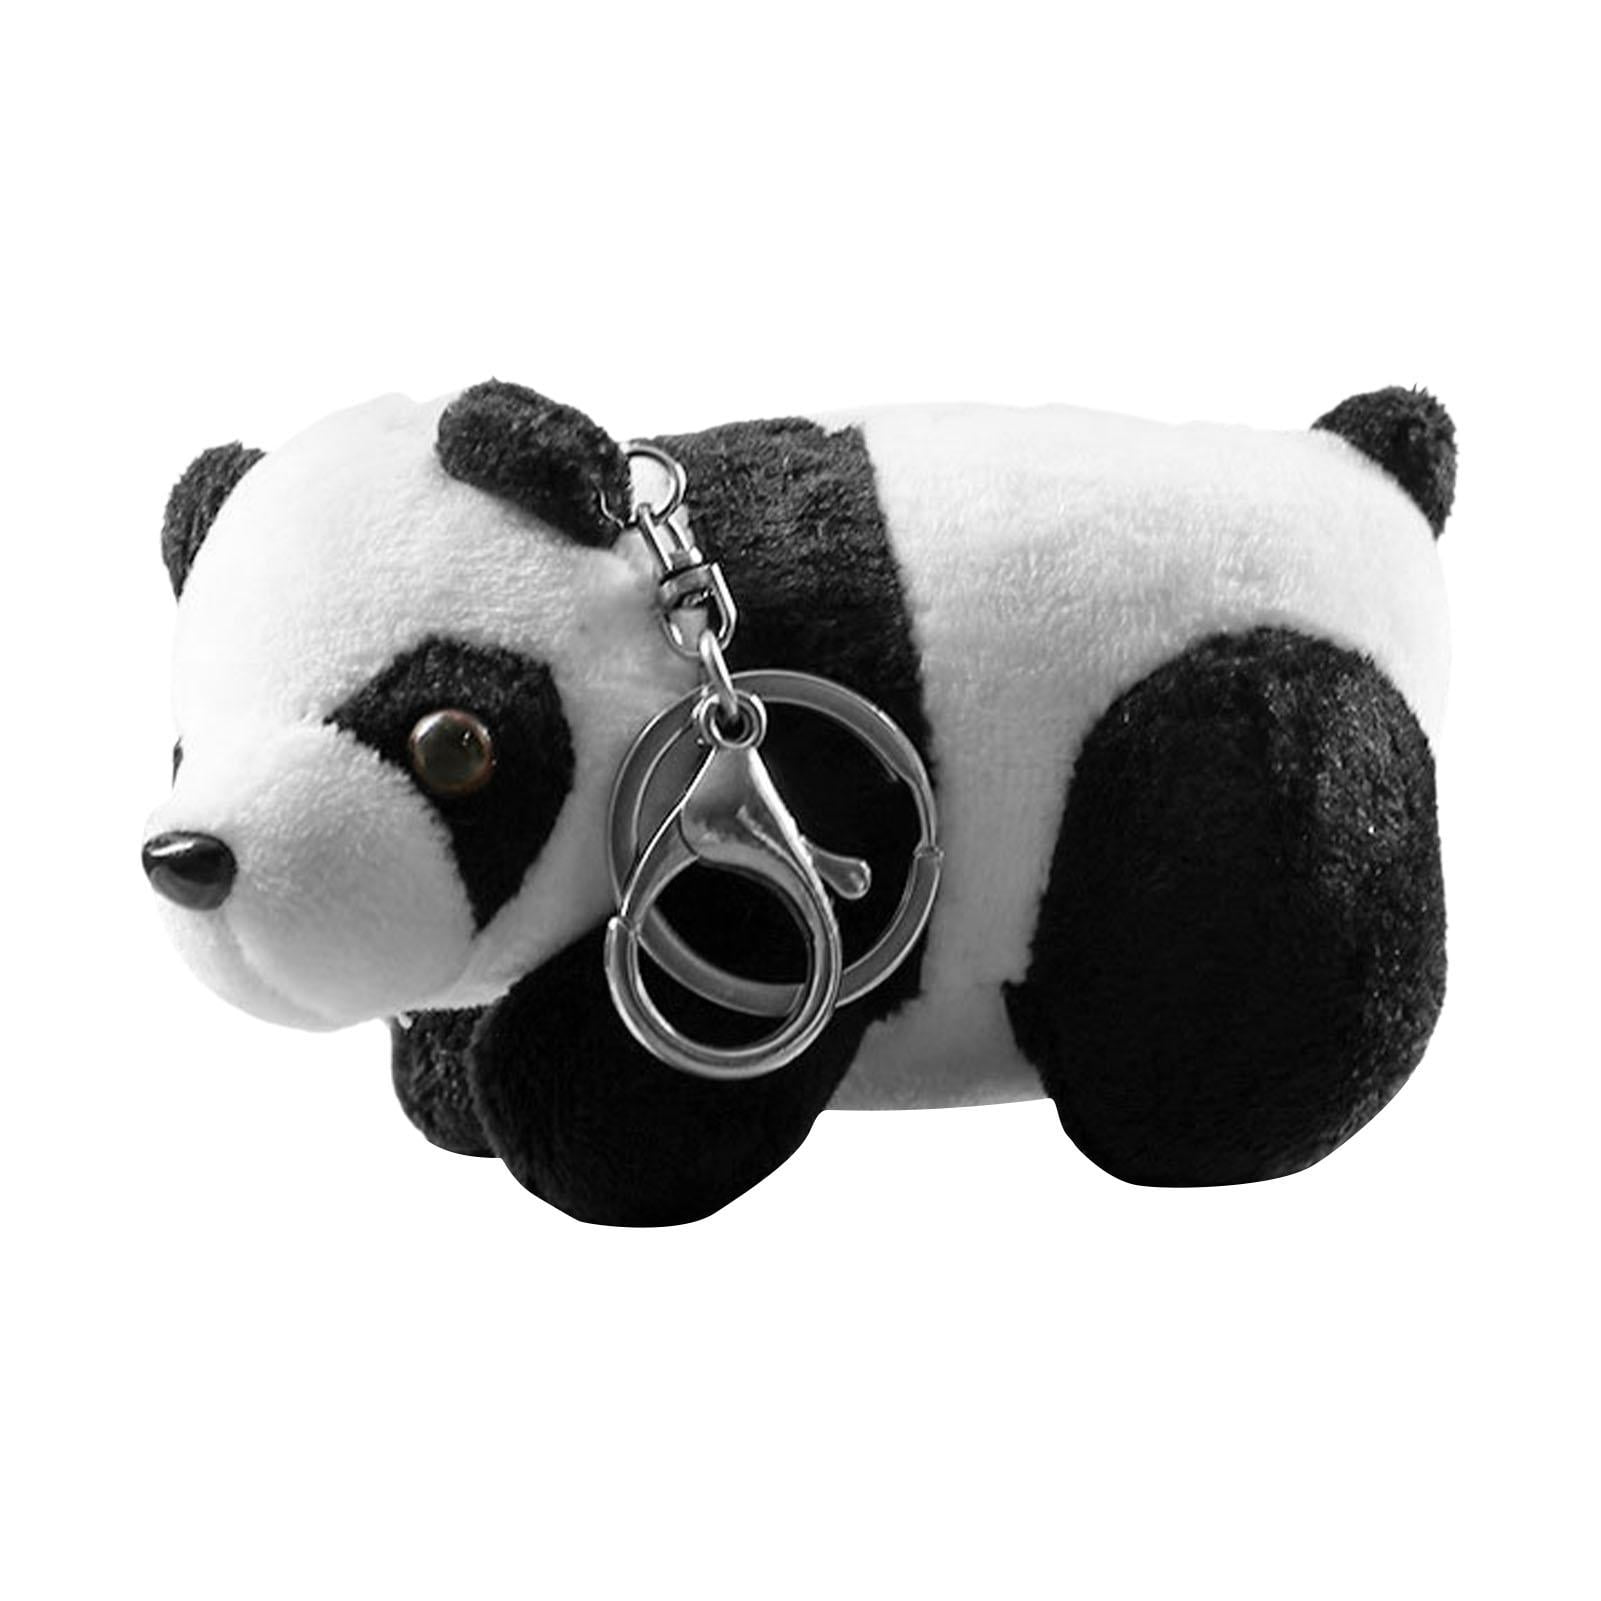 Cute Soft Plush Stuffed Panda Animal Doll Toy Keychain Holiday Gift LA 